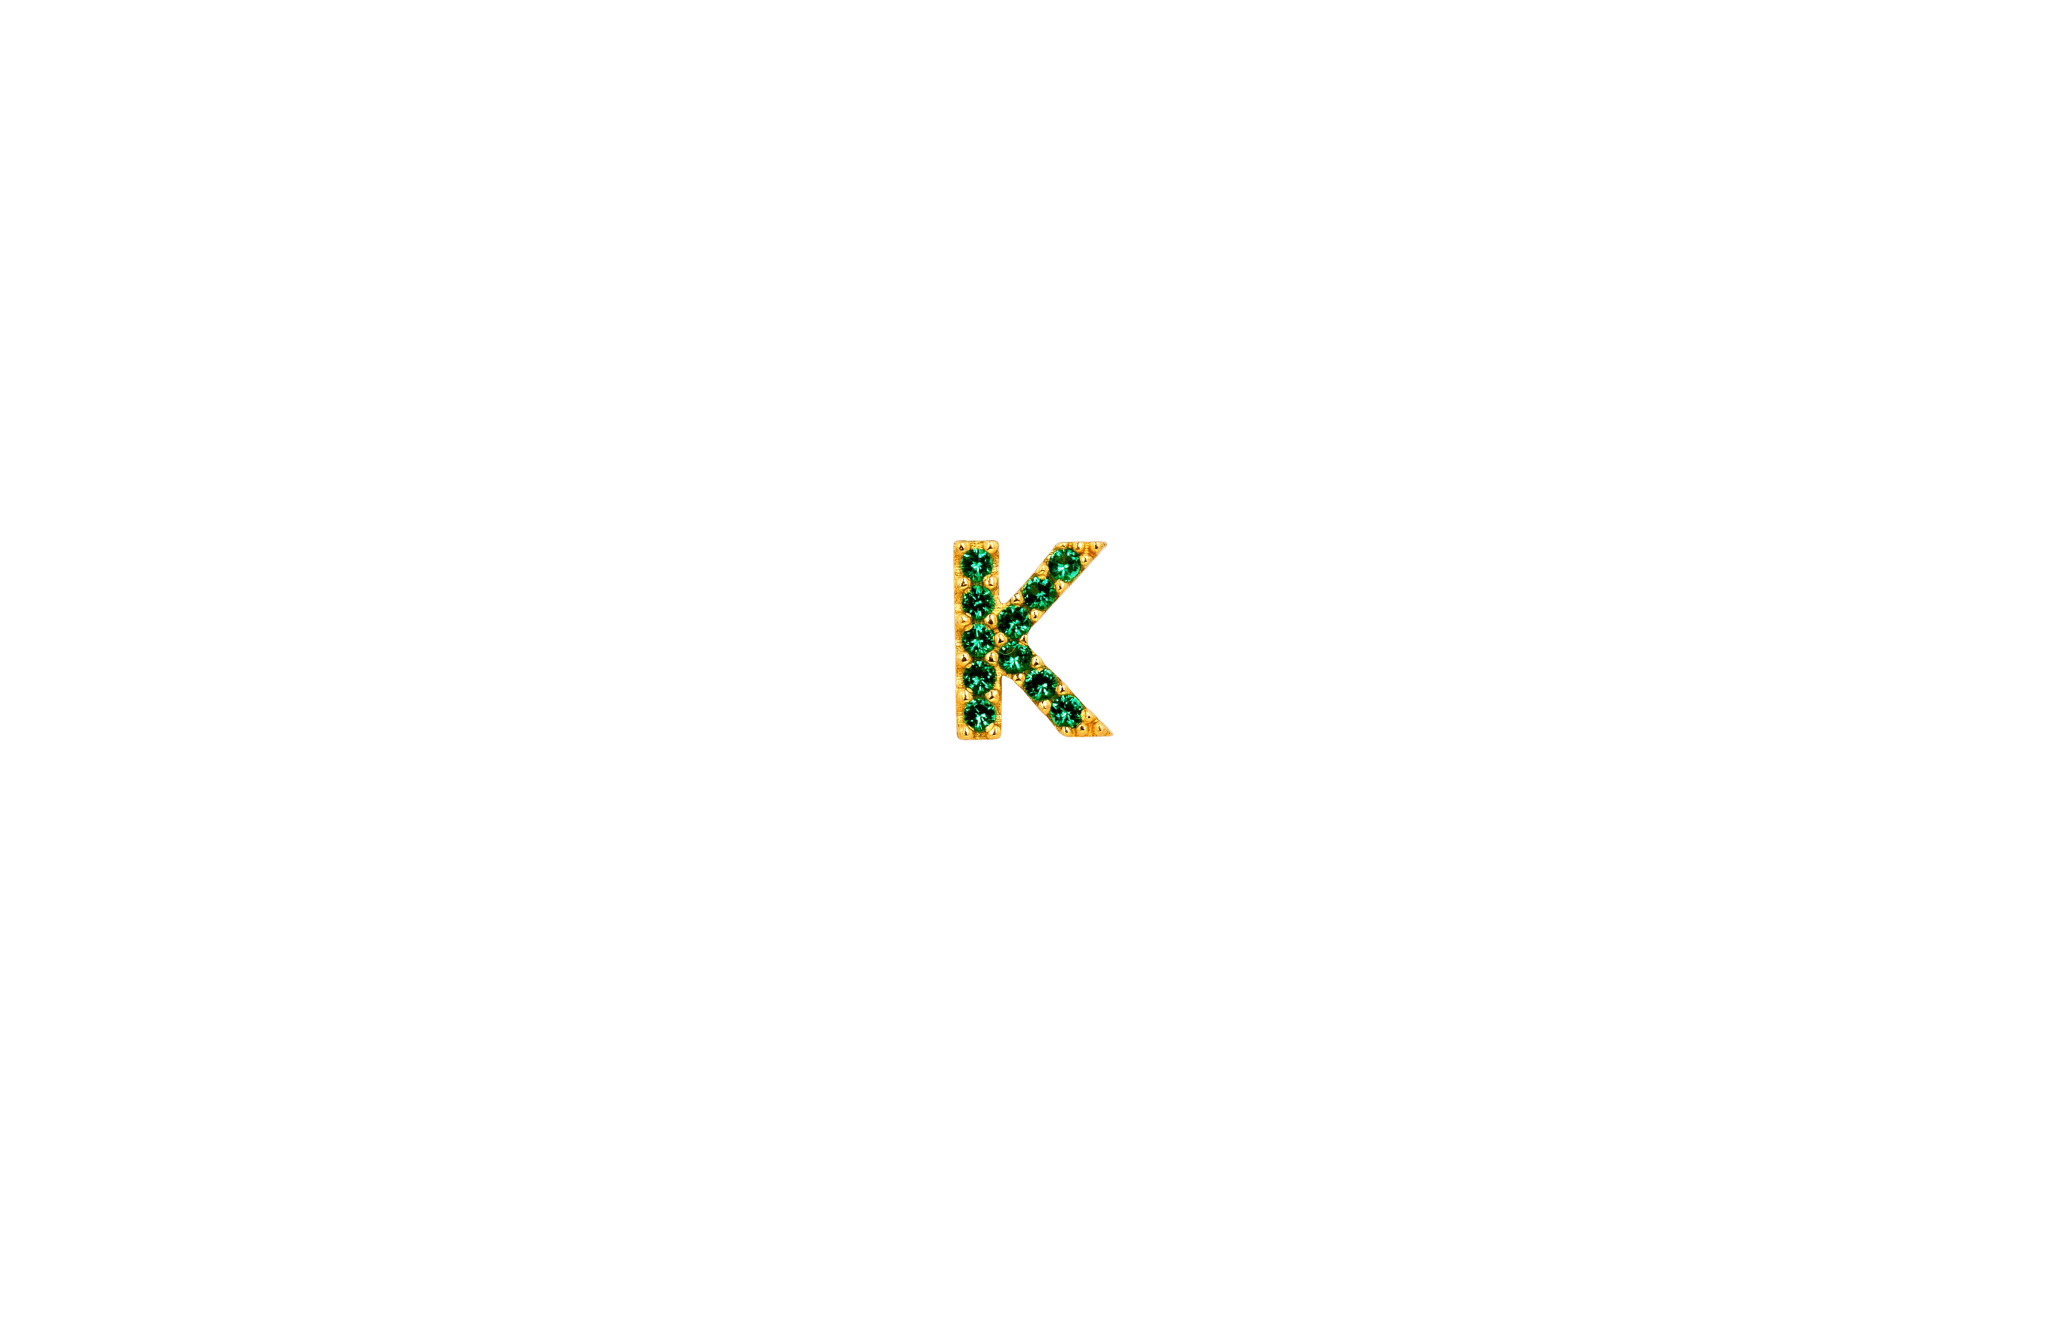 IX K Green Earring